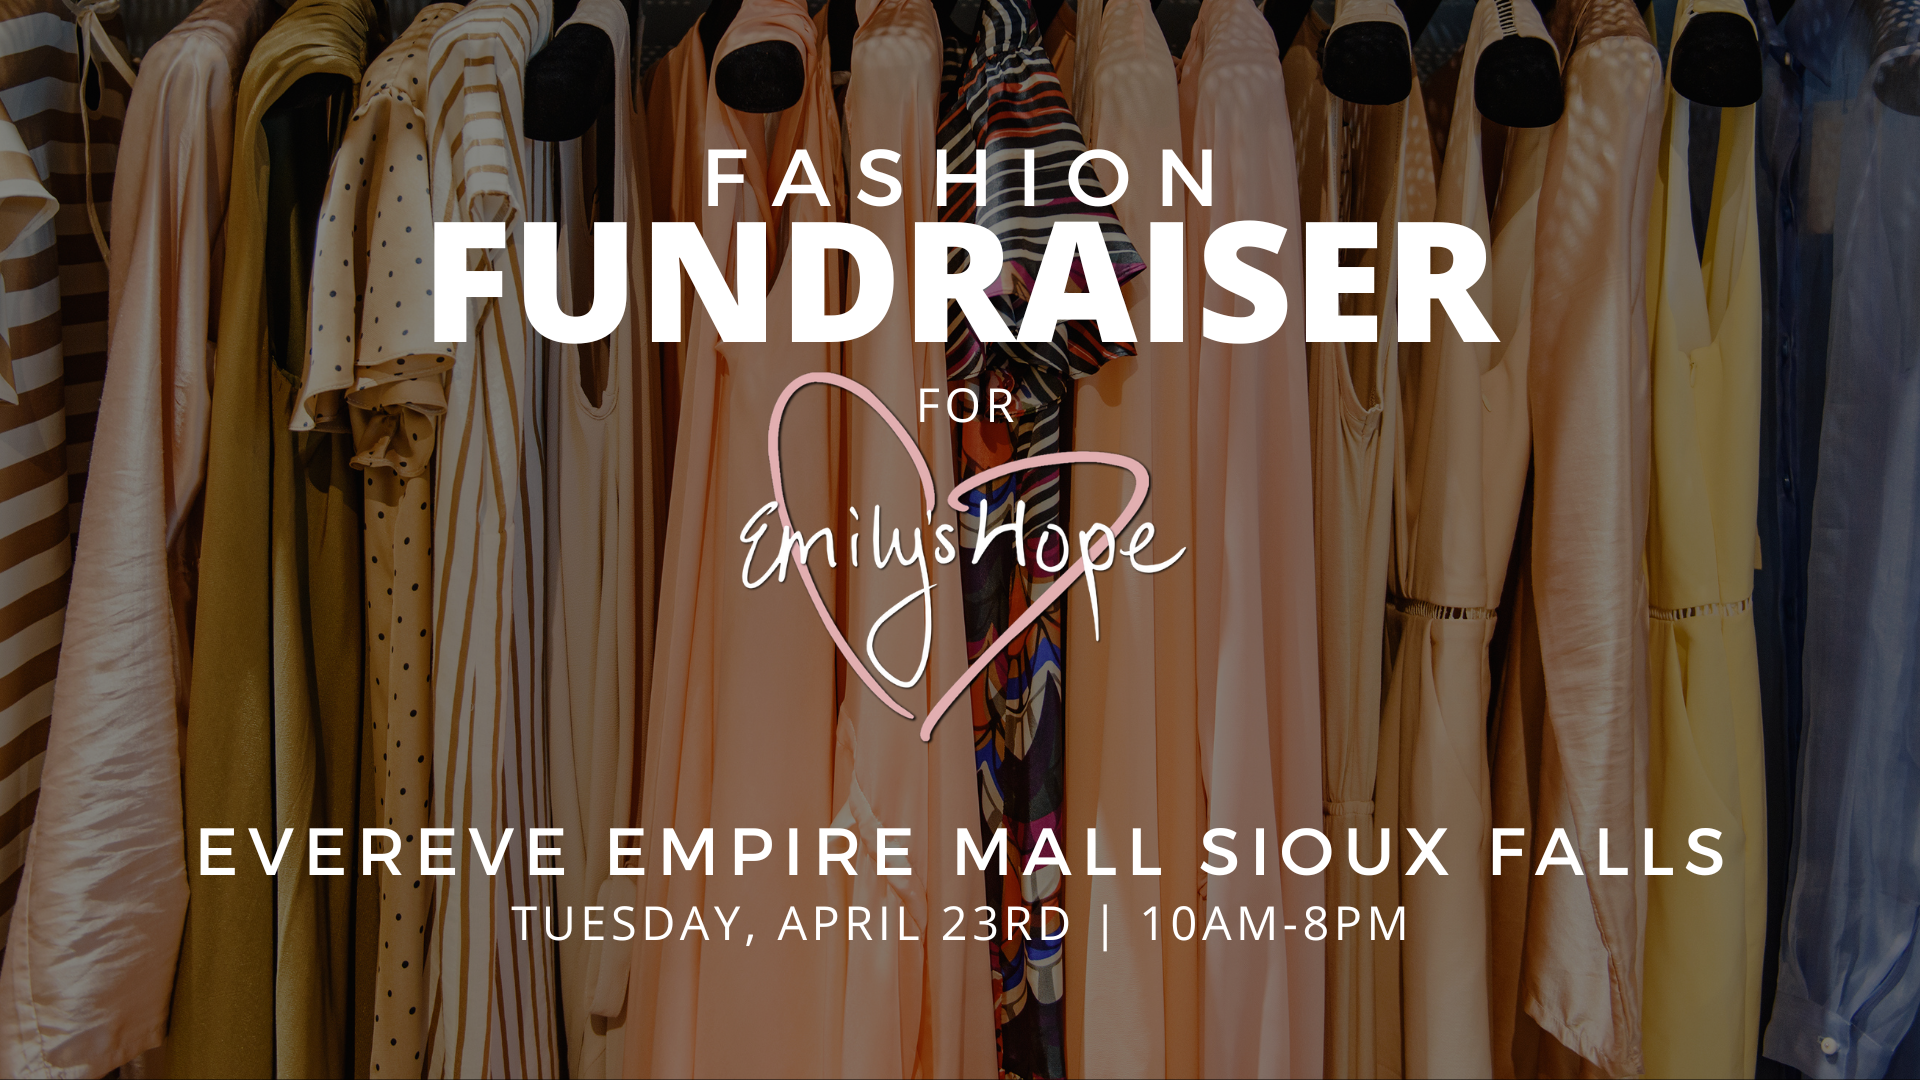 EVEREVE Fashion Fundraiser for Emily’s Hope